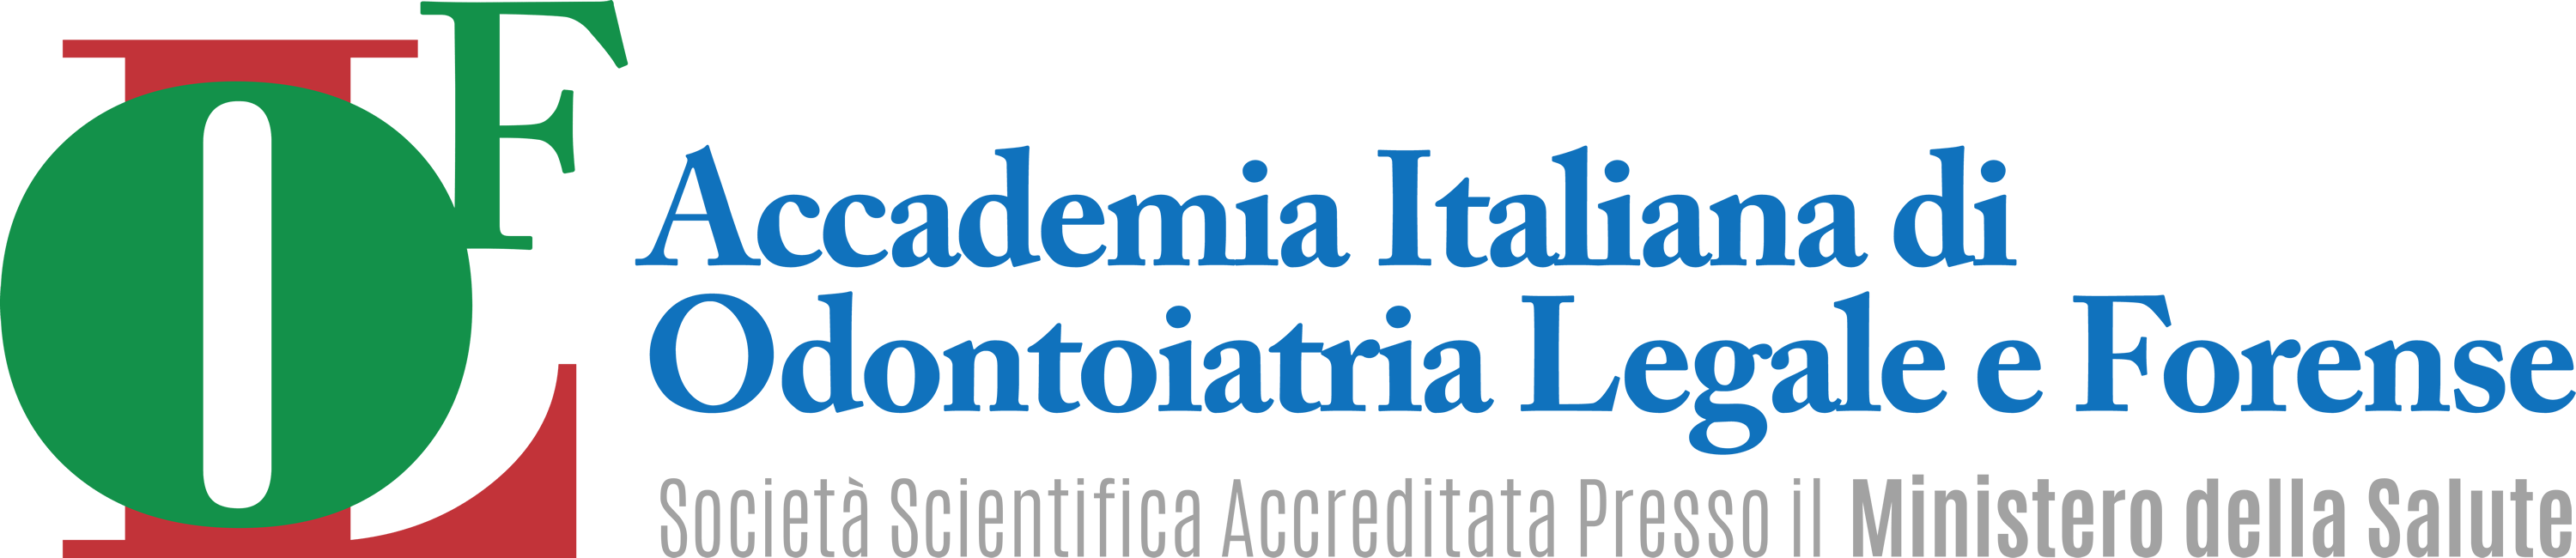 OL-F | Accademia Italiana di Odontoiatria Legale e Forense